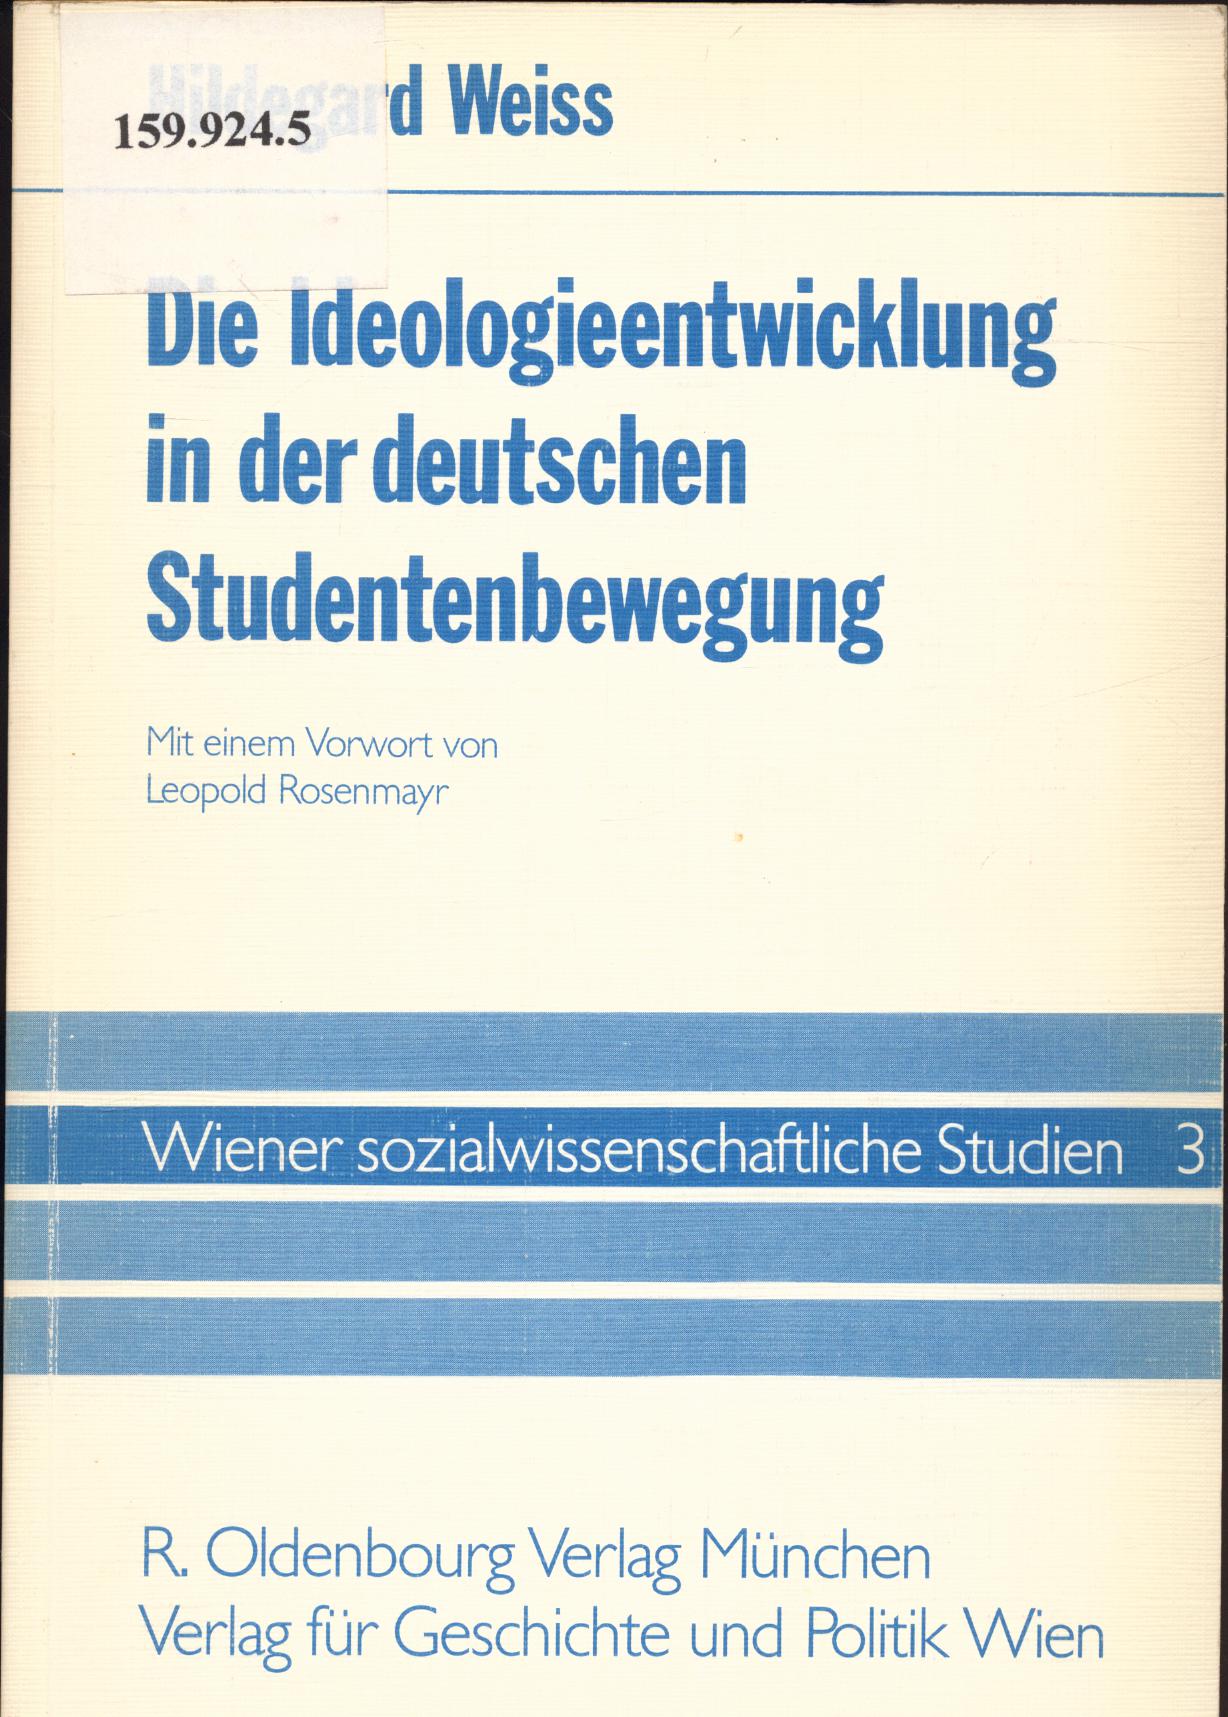 Die Ideologieentwicklung in der deutschen Studentenbewegung Mit einem Vorwort von Leopold Rosenmayr - Weiss, Hildegard und Leopold Rosenmayr